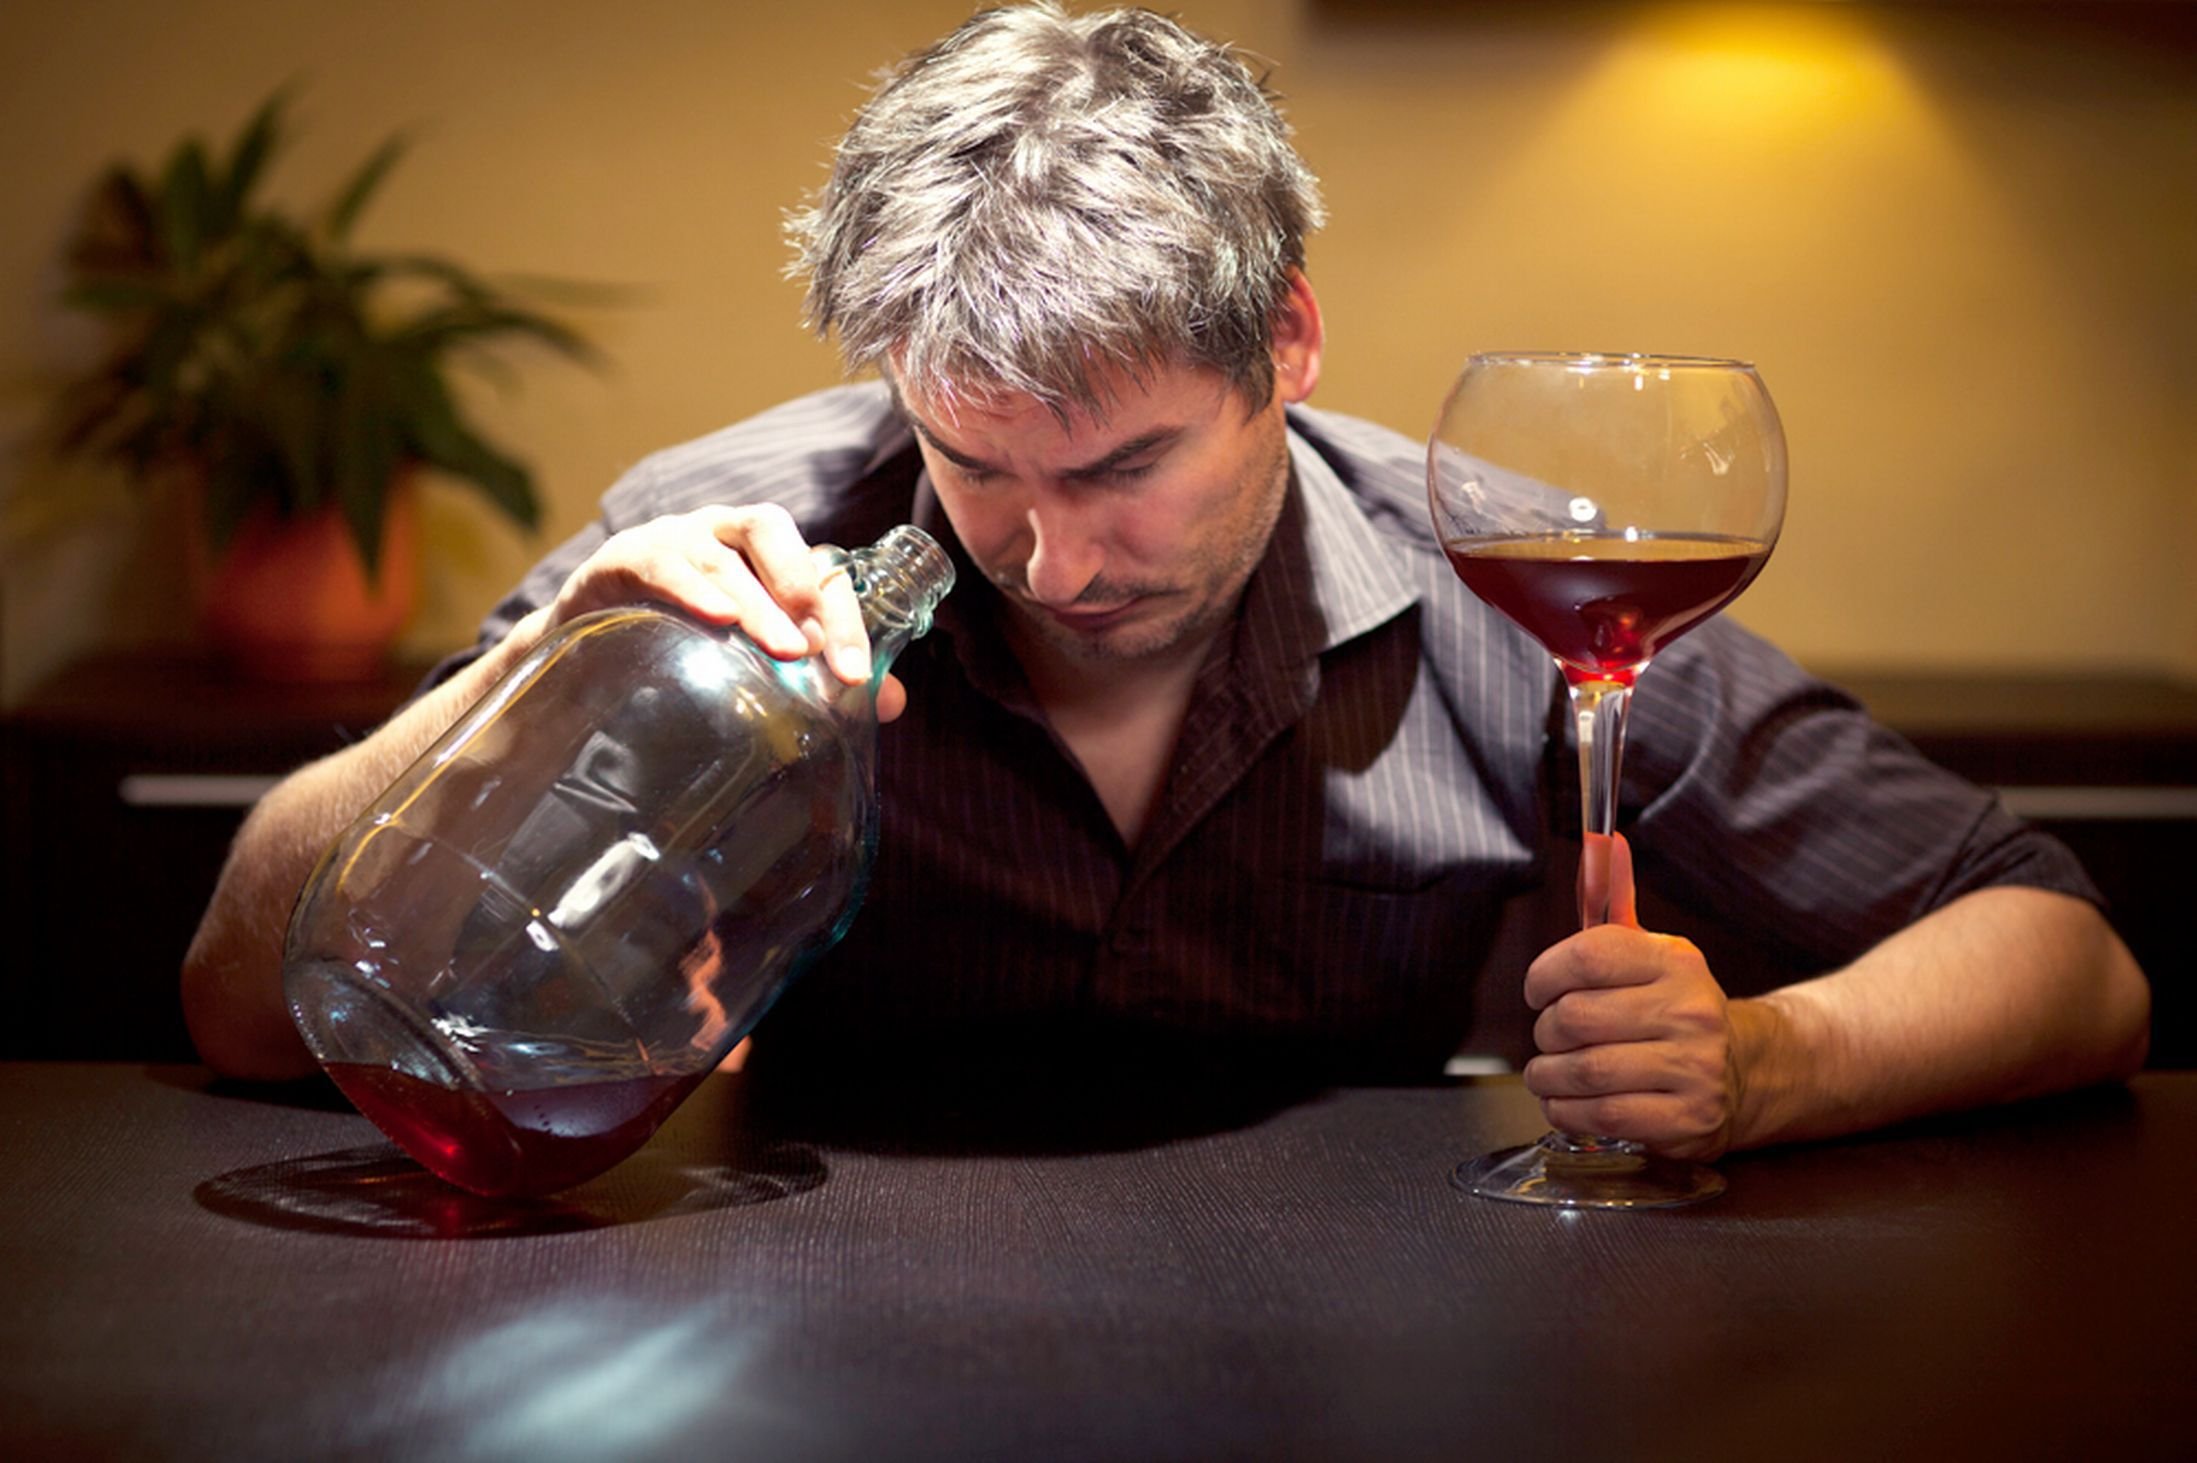 Картинка пьющий человек. Пьющий мужчина. Человек с вином. Мужчина с вином. Люди пьют вино.